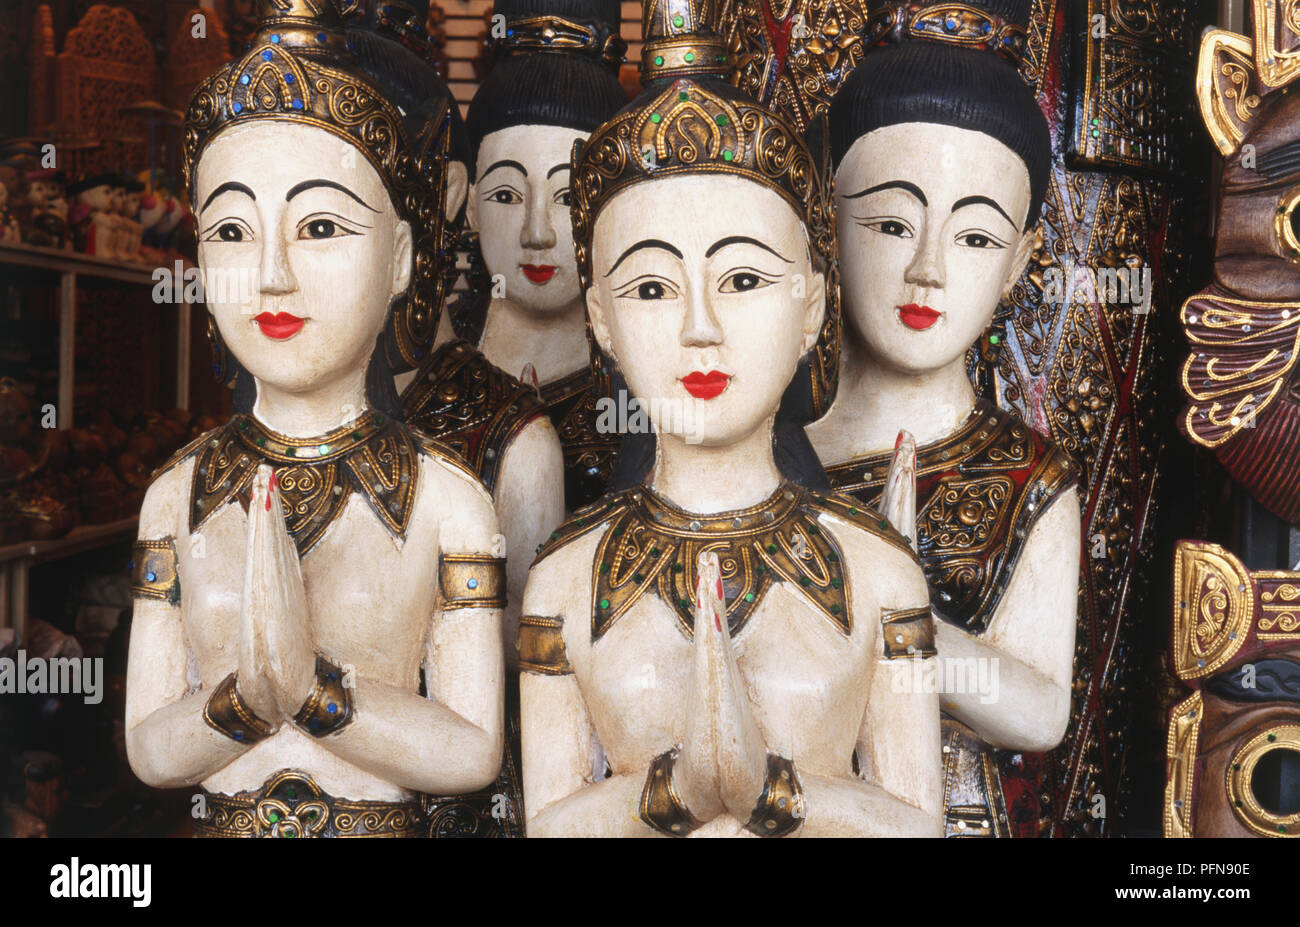 Thailand, Bangkok, Chatuchak Market, traditionelle Thailändische bemalte Holzfiguren auf Verkauf. Stockfoto